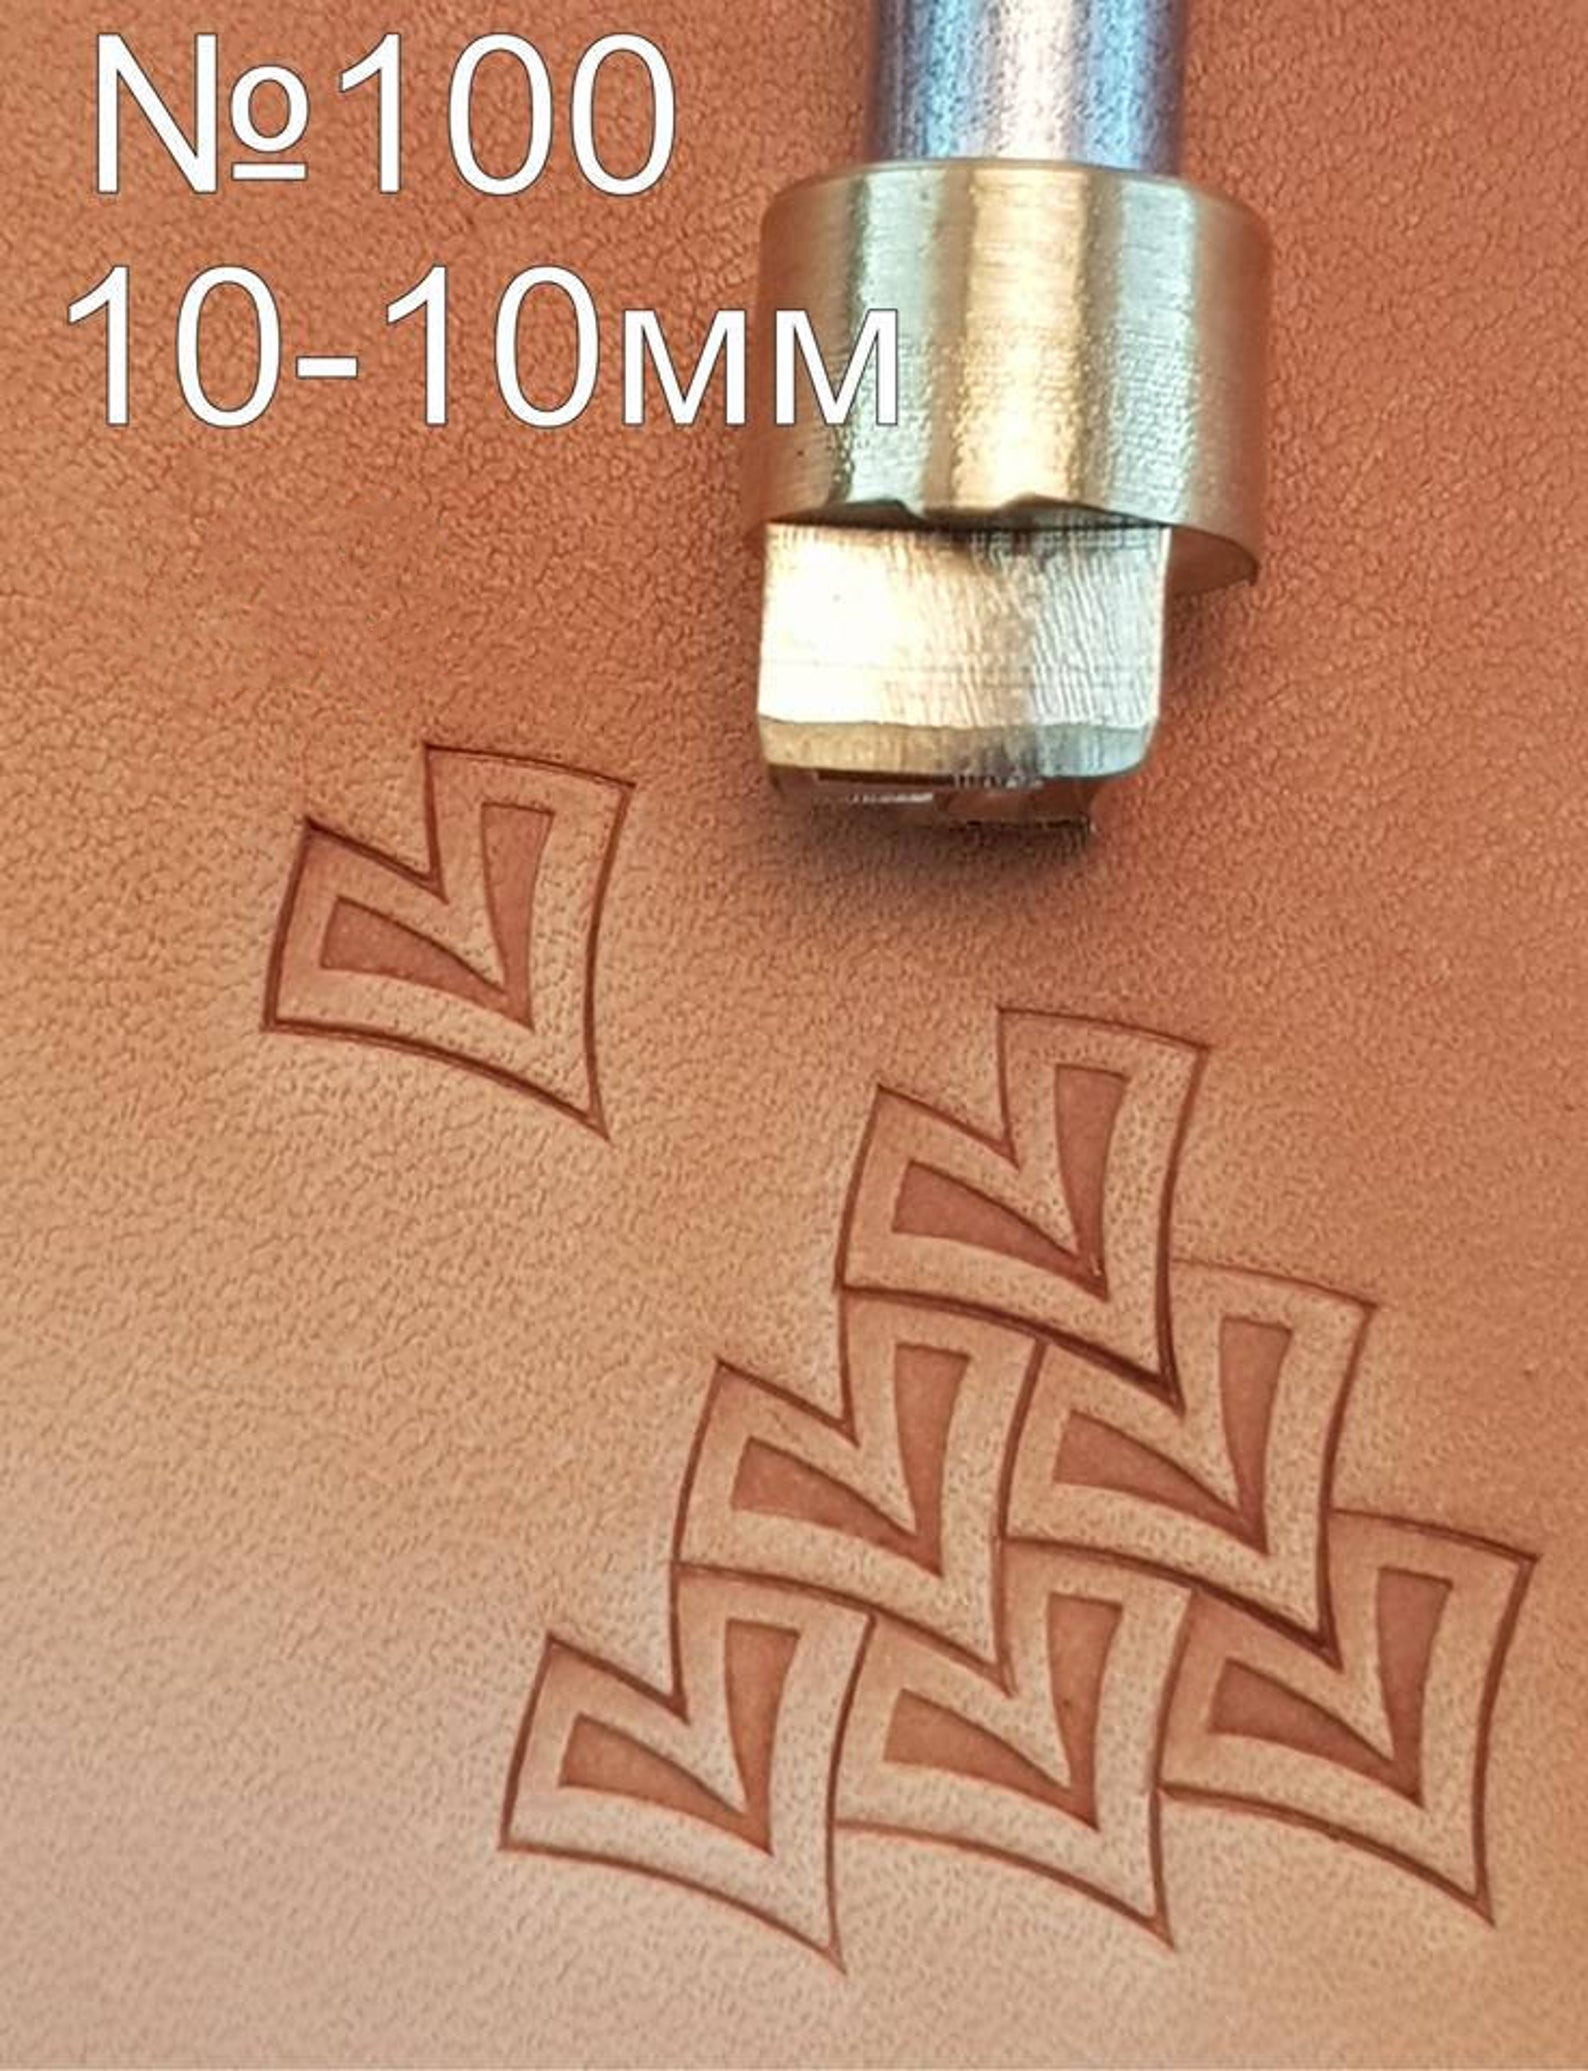 Leather stamp tool #100 - SpasGoranov